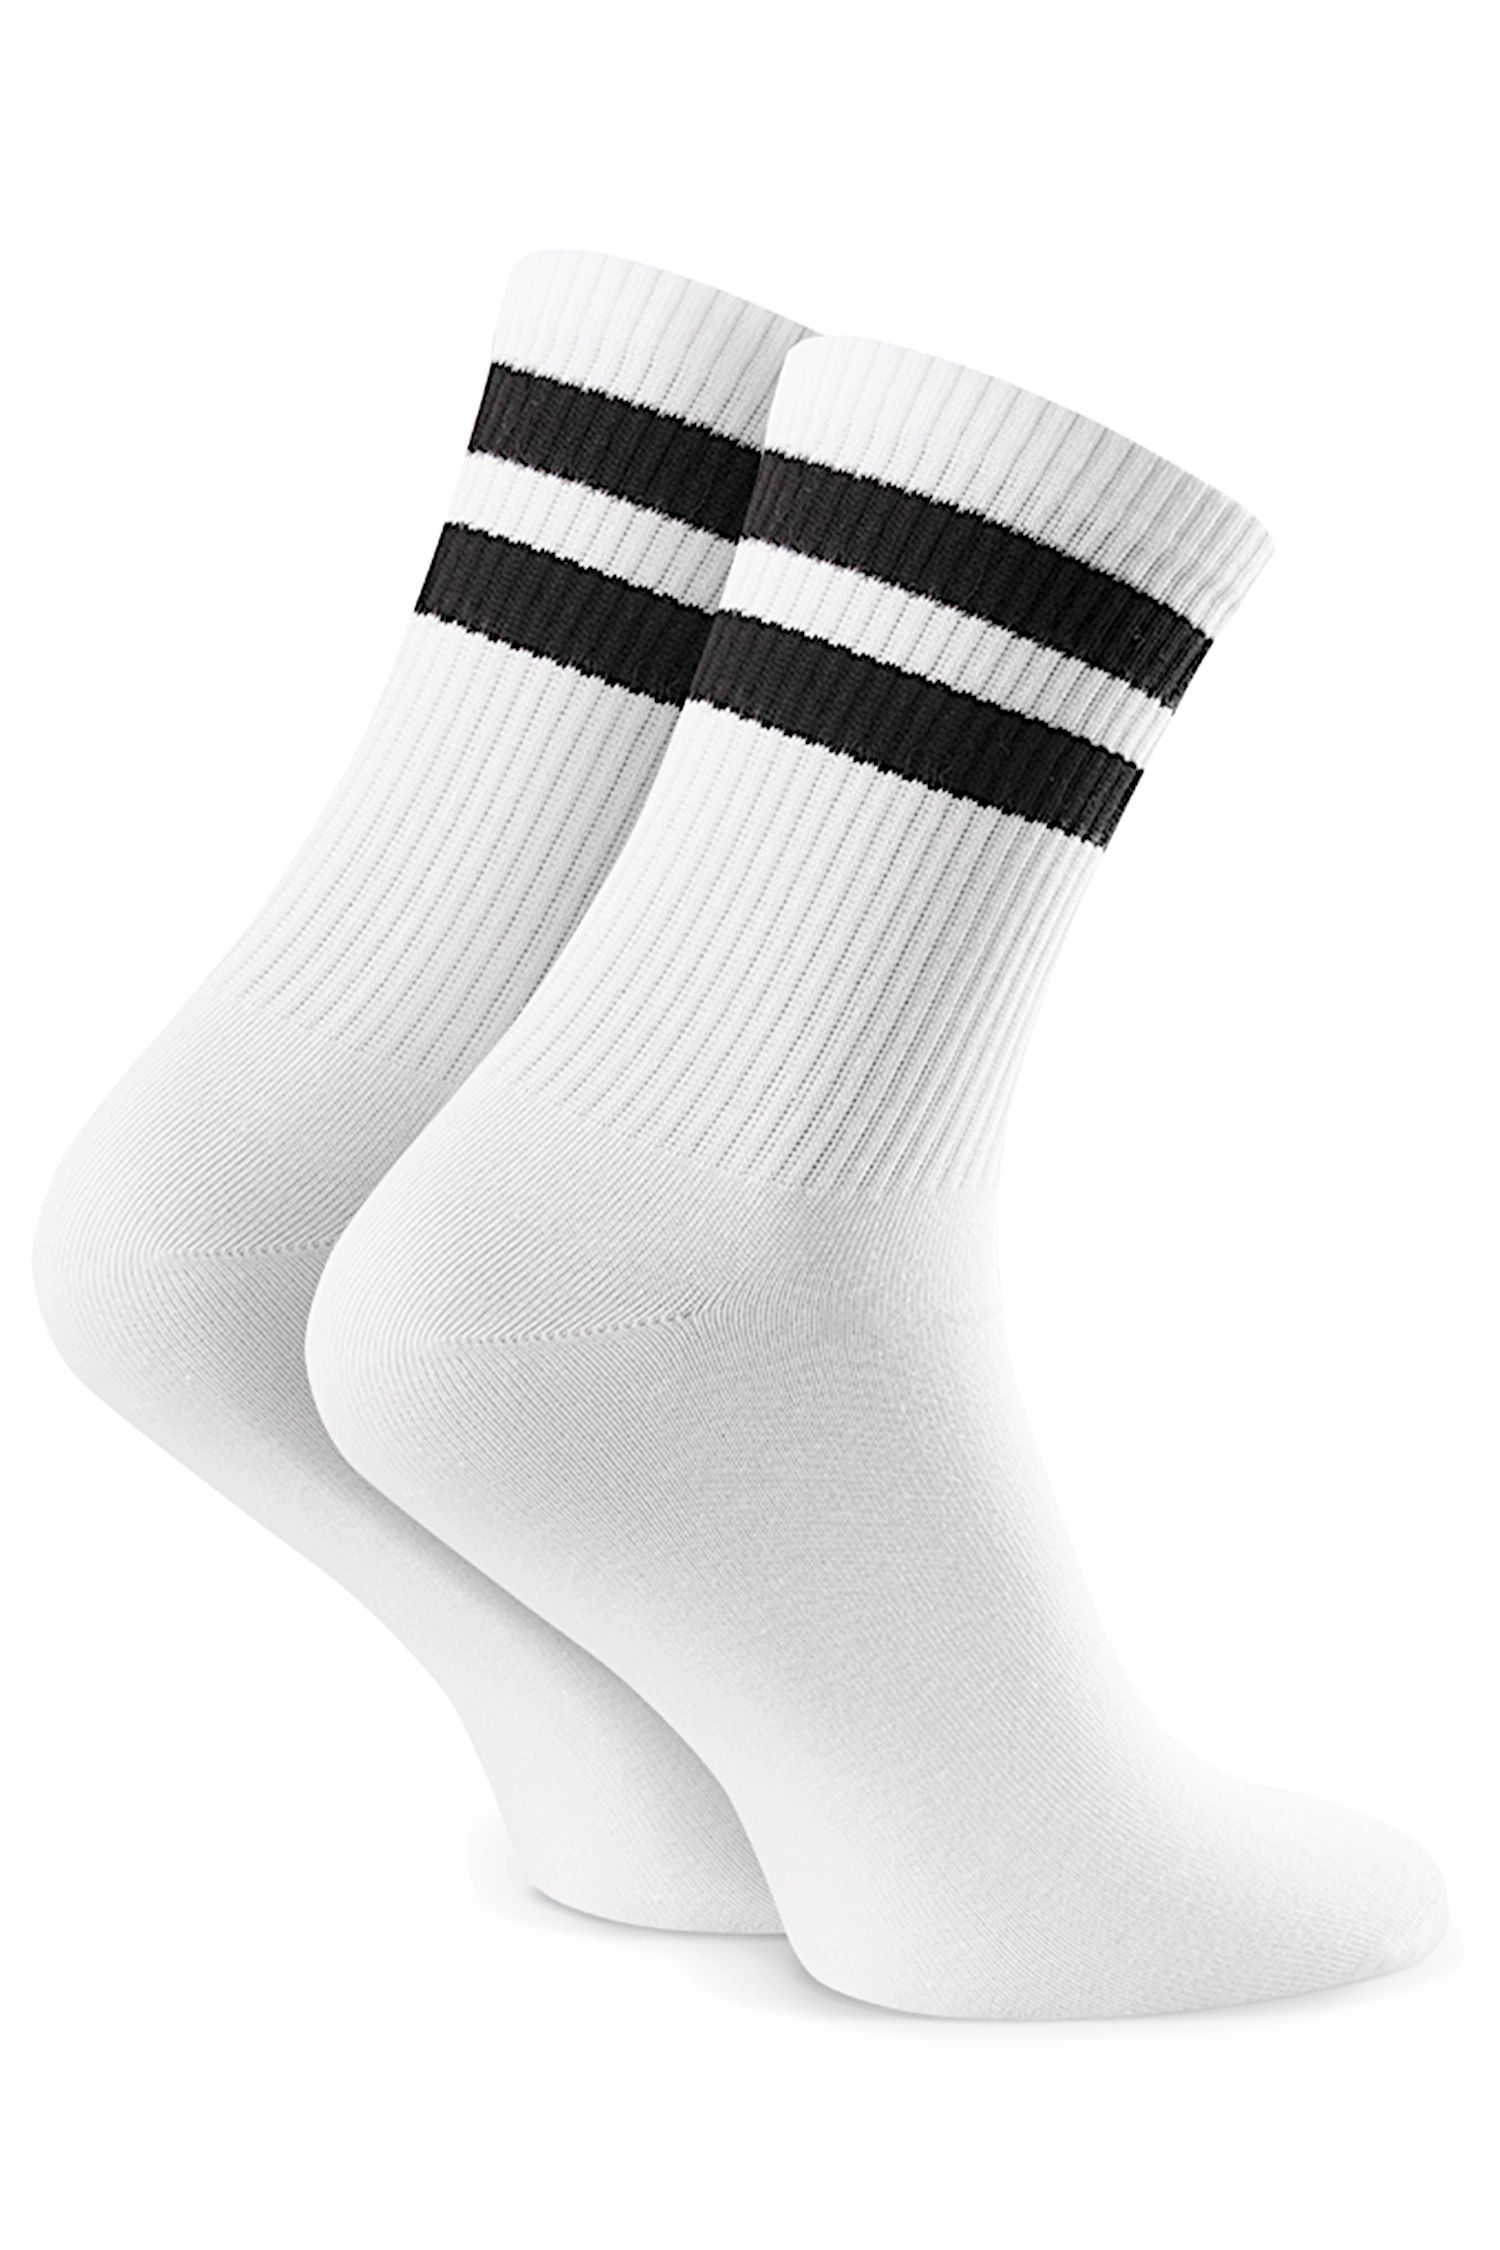 Dětské ponožky 022 306 white